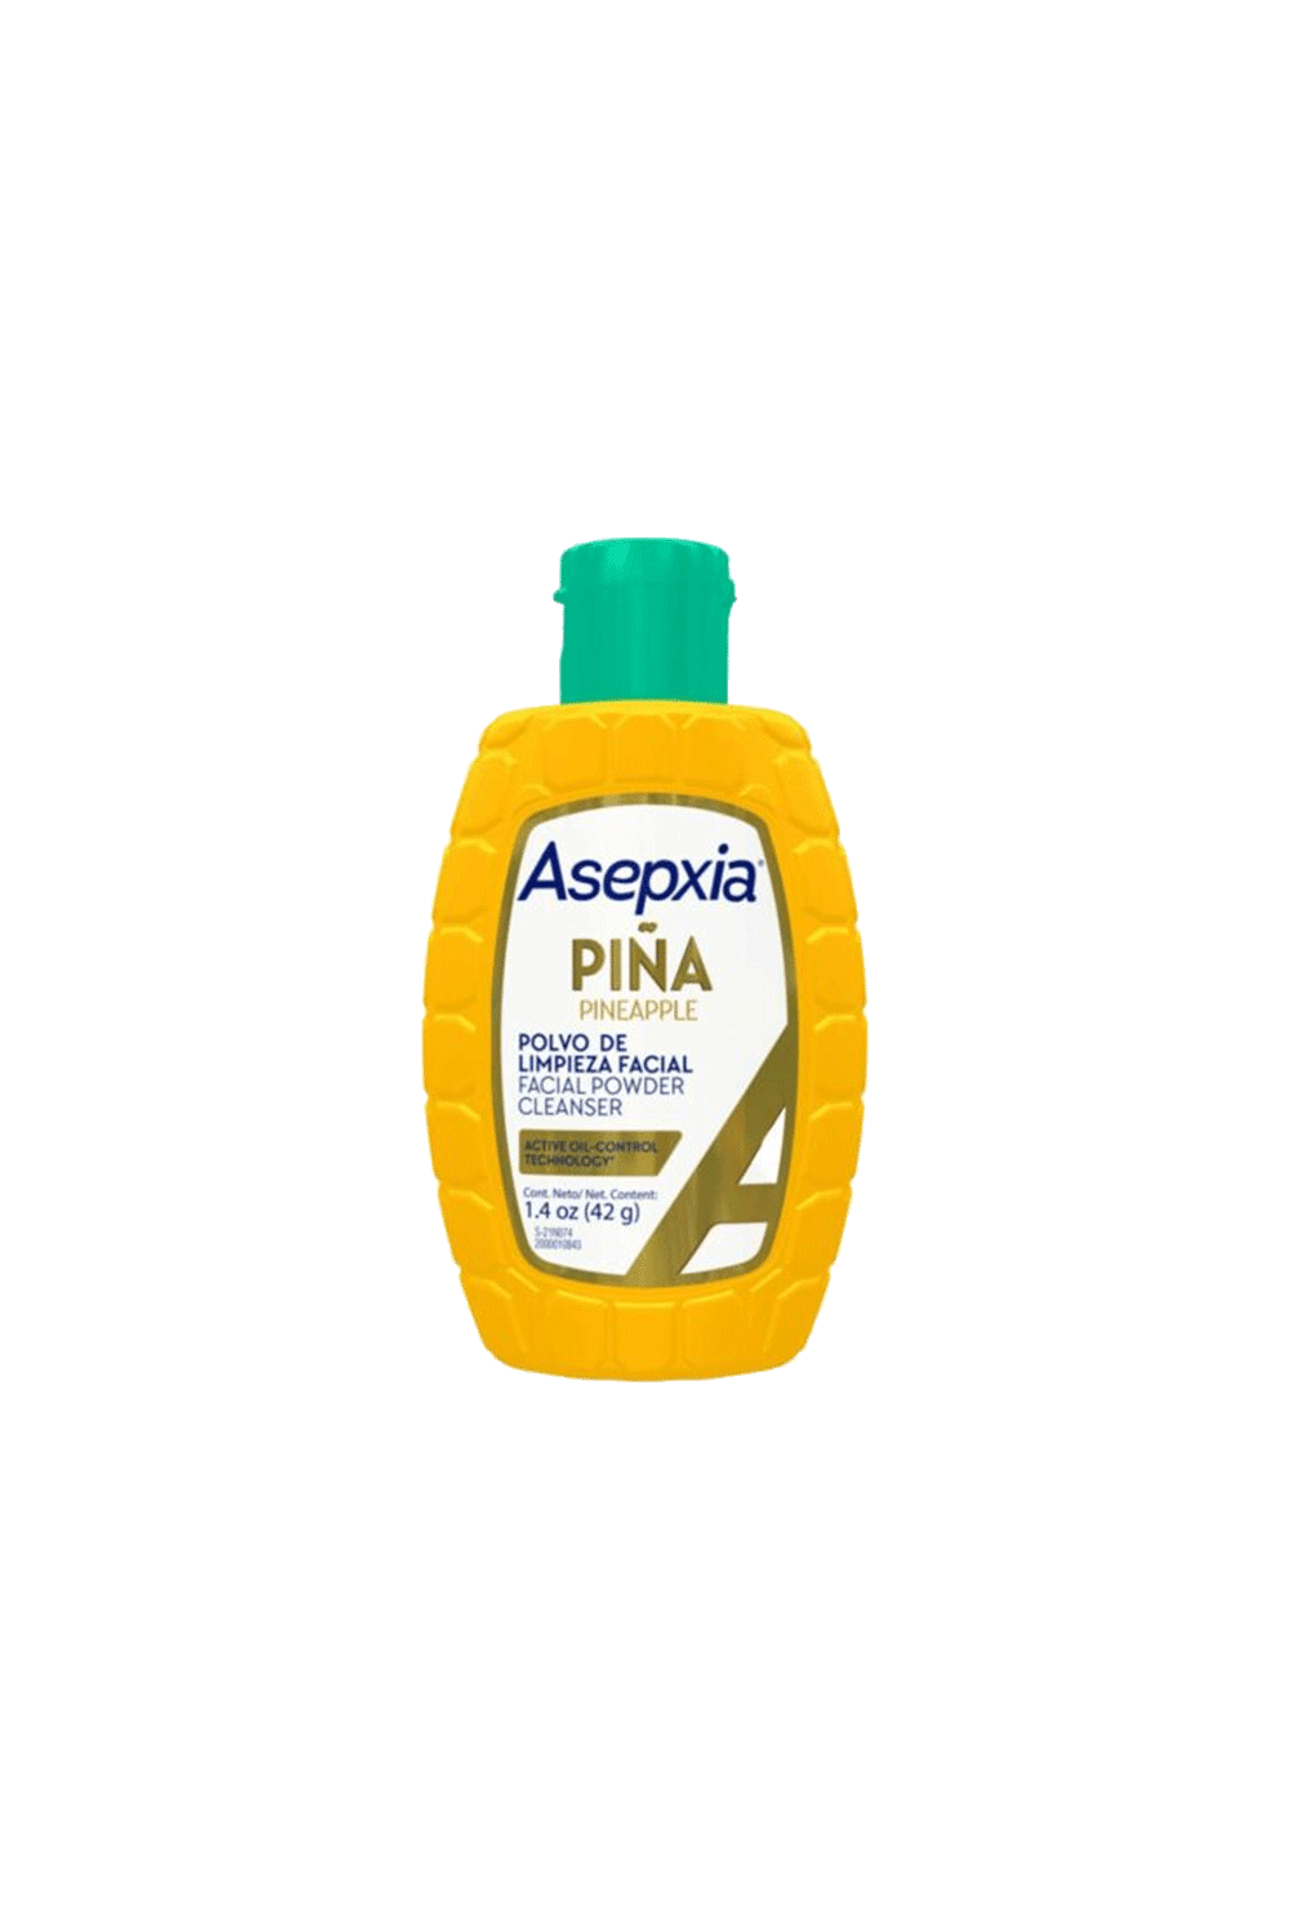 Asepxia-Polvo-De-Limpieza-Facial-Asepxia-Piña-x-42gr-0650240060205_img1